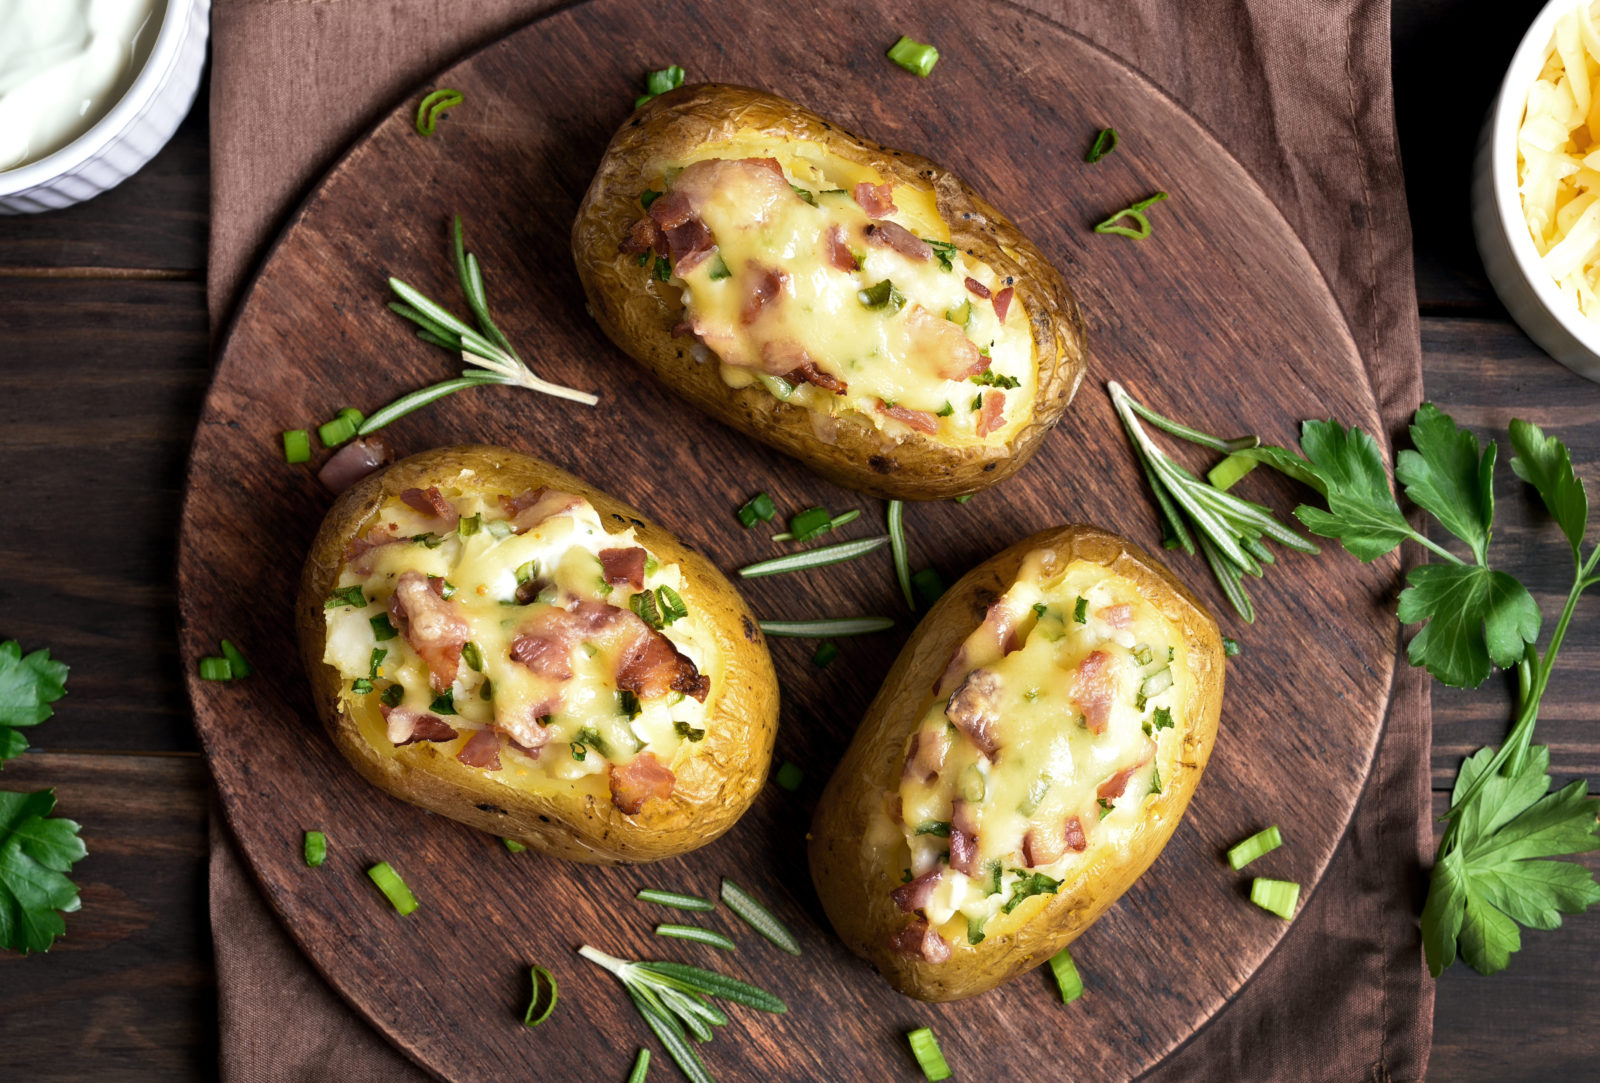 Super Recept van de week]: Gevulde aardappelen met spek, cheddar en zure PI-43